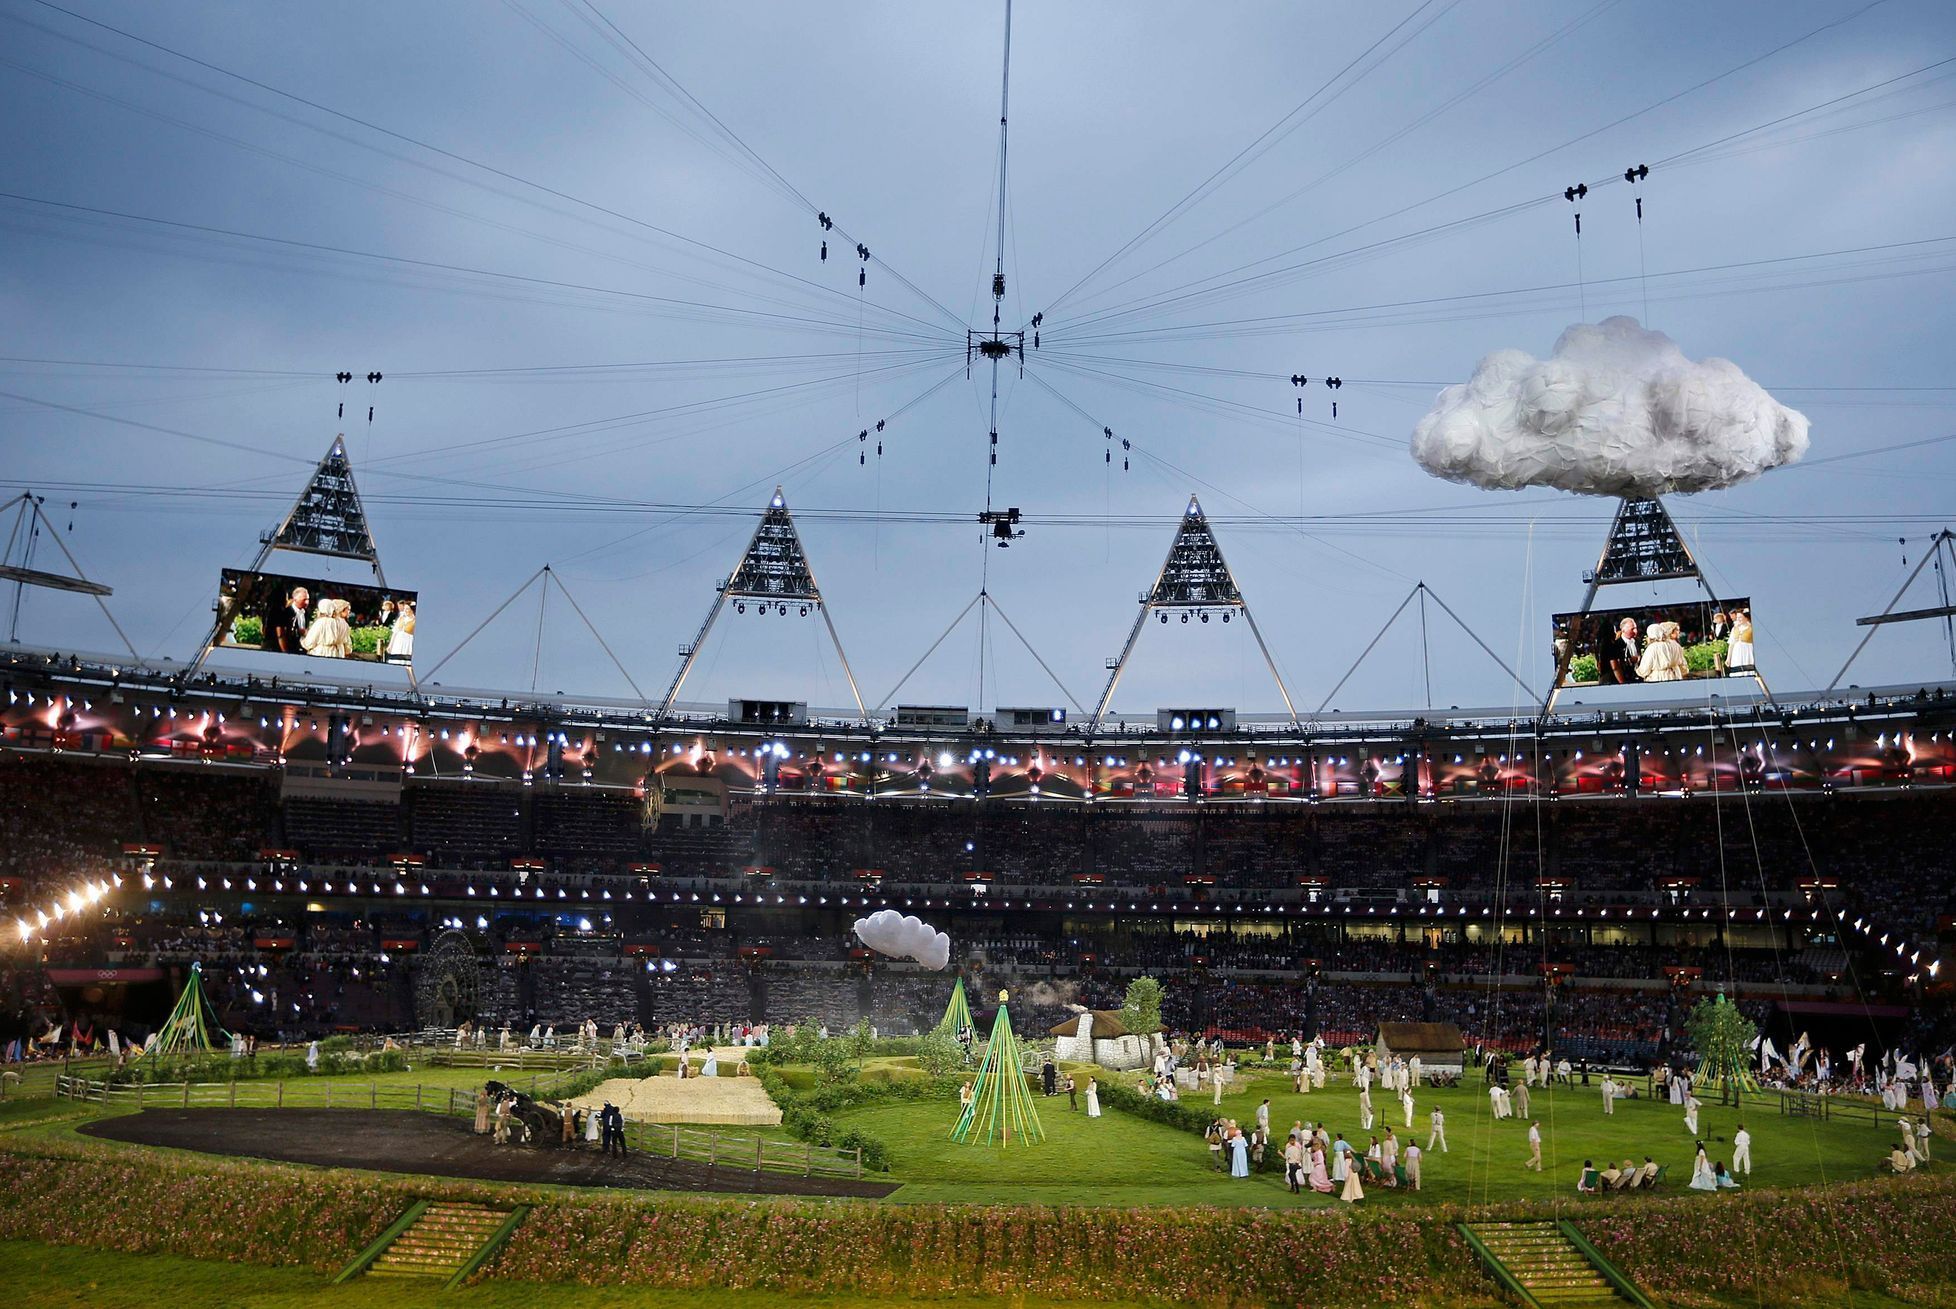 Slavnostní zahájení olympiády v Londýně 2012: ceremoniál